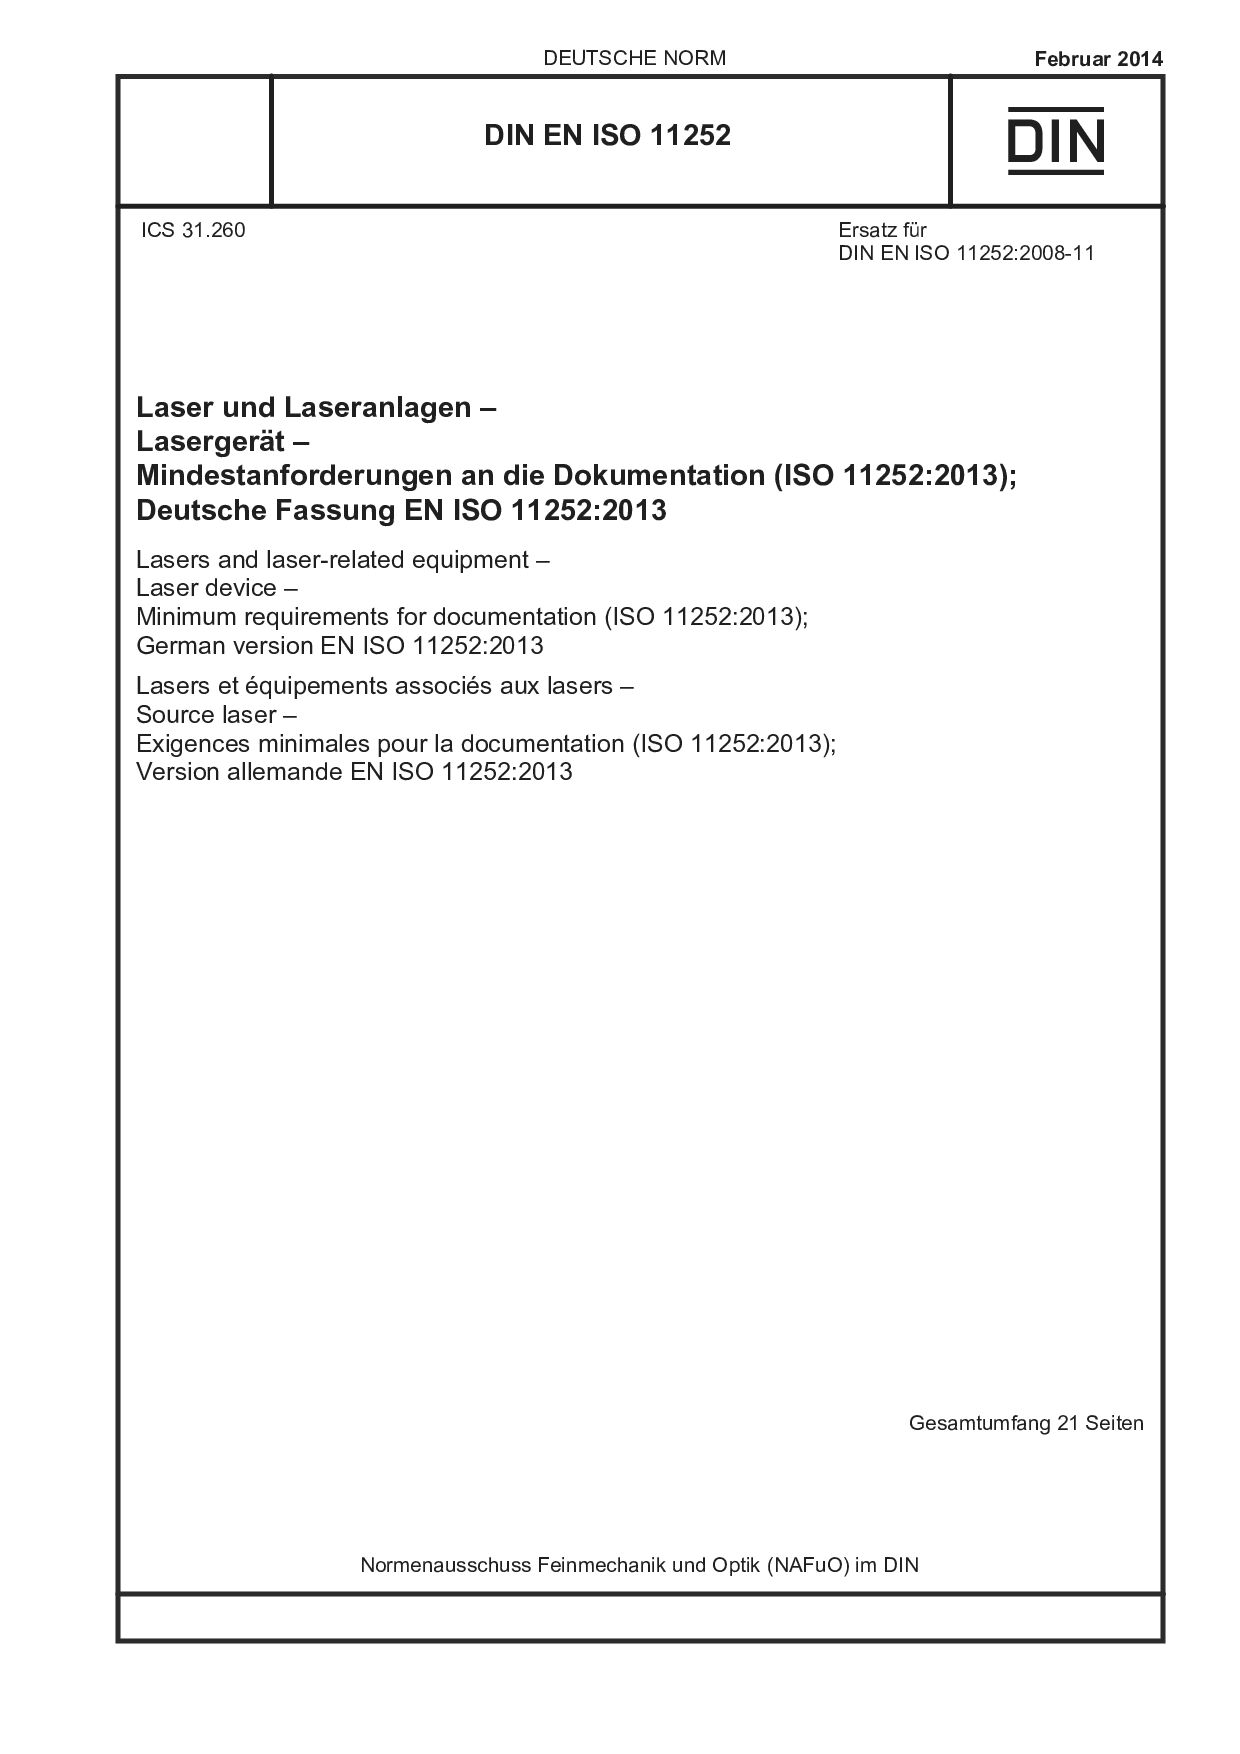 DIN EN ISO 11252:2014